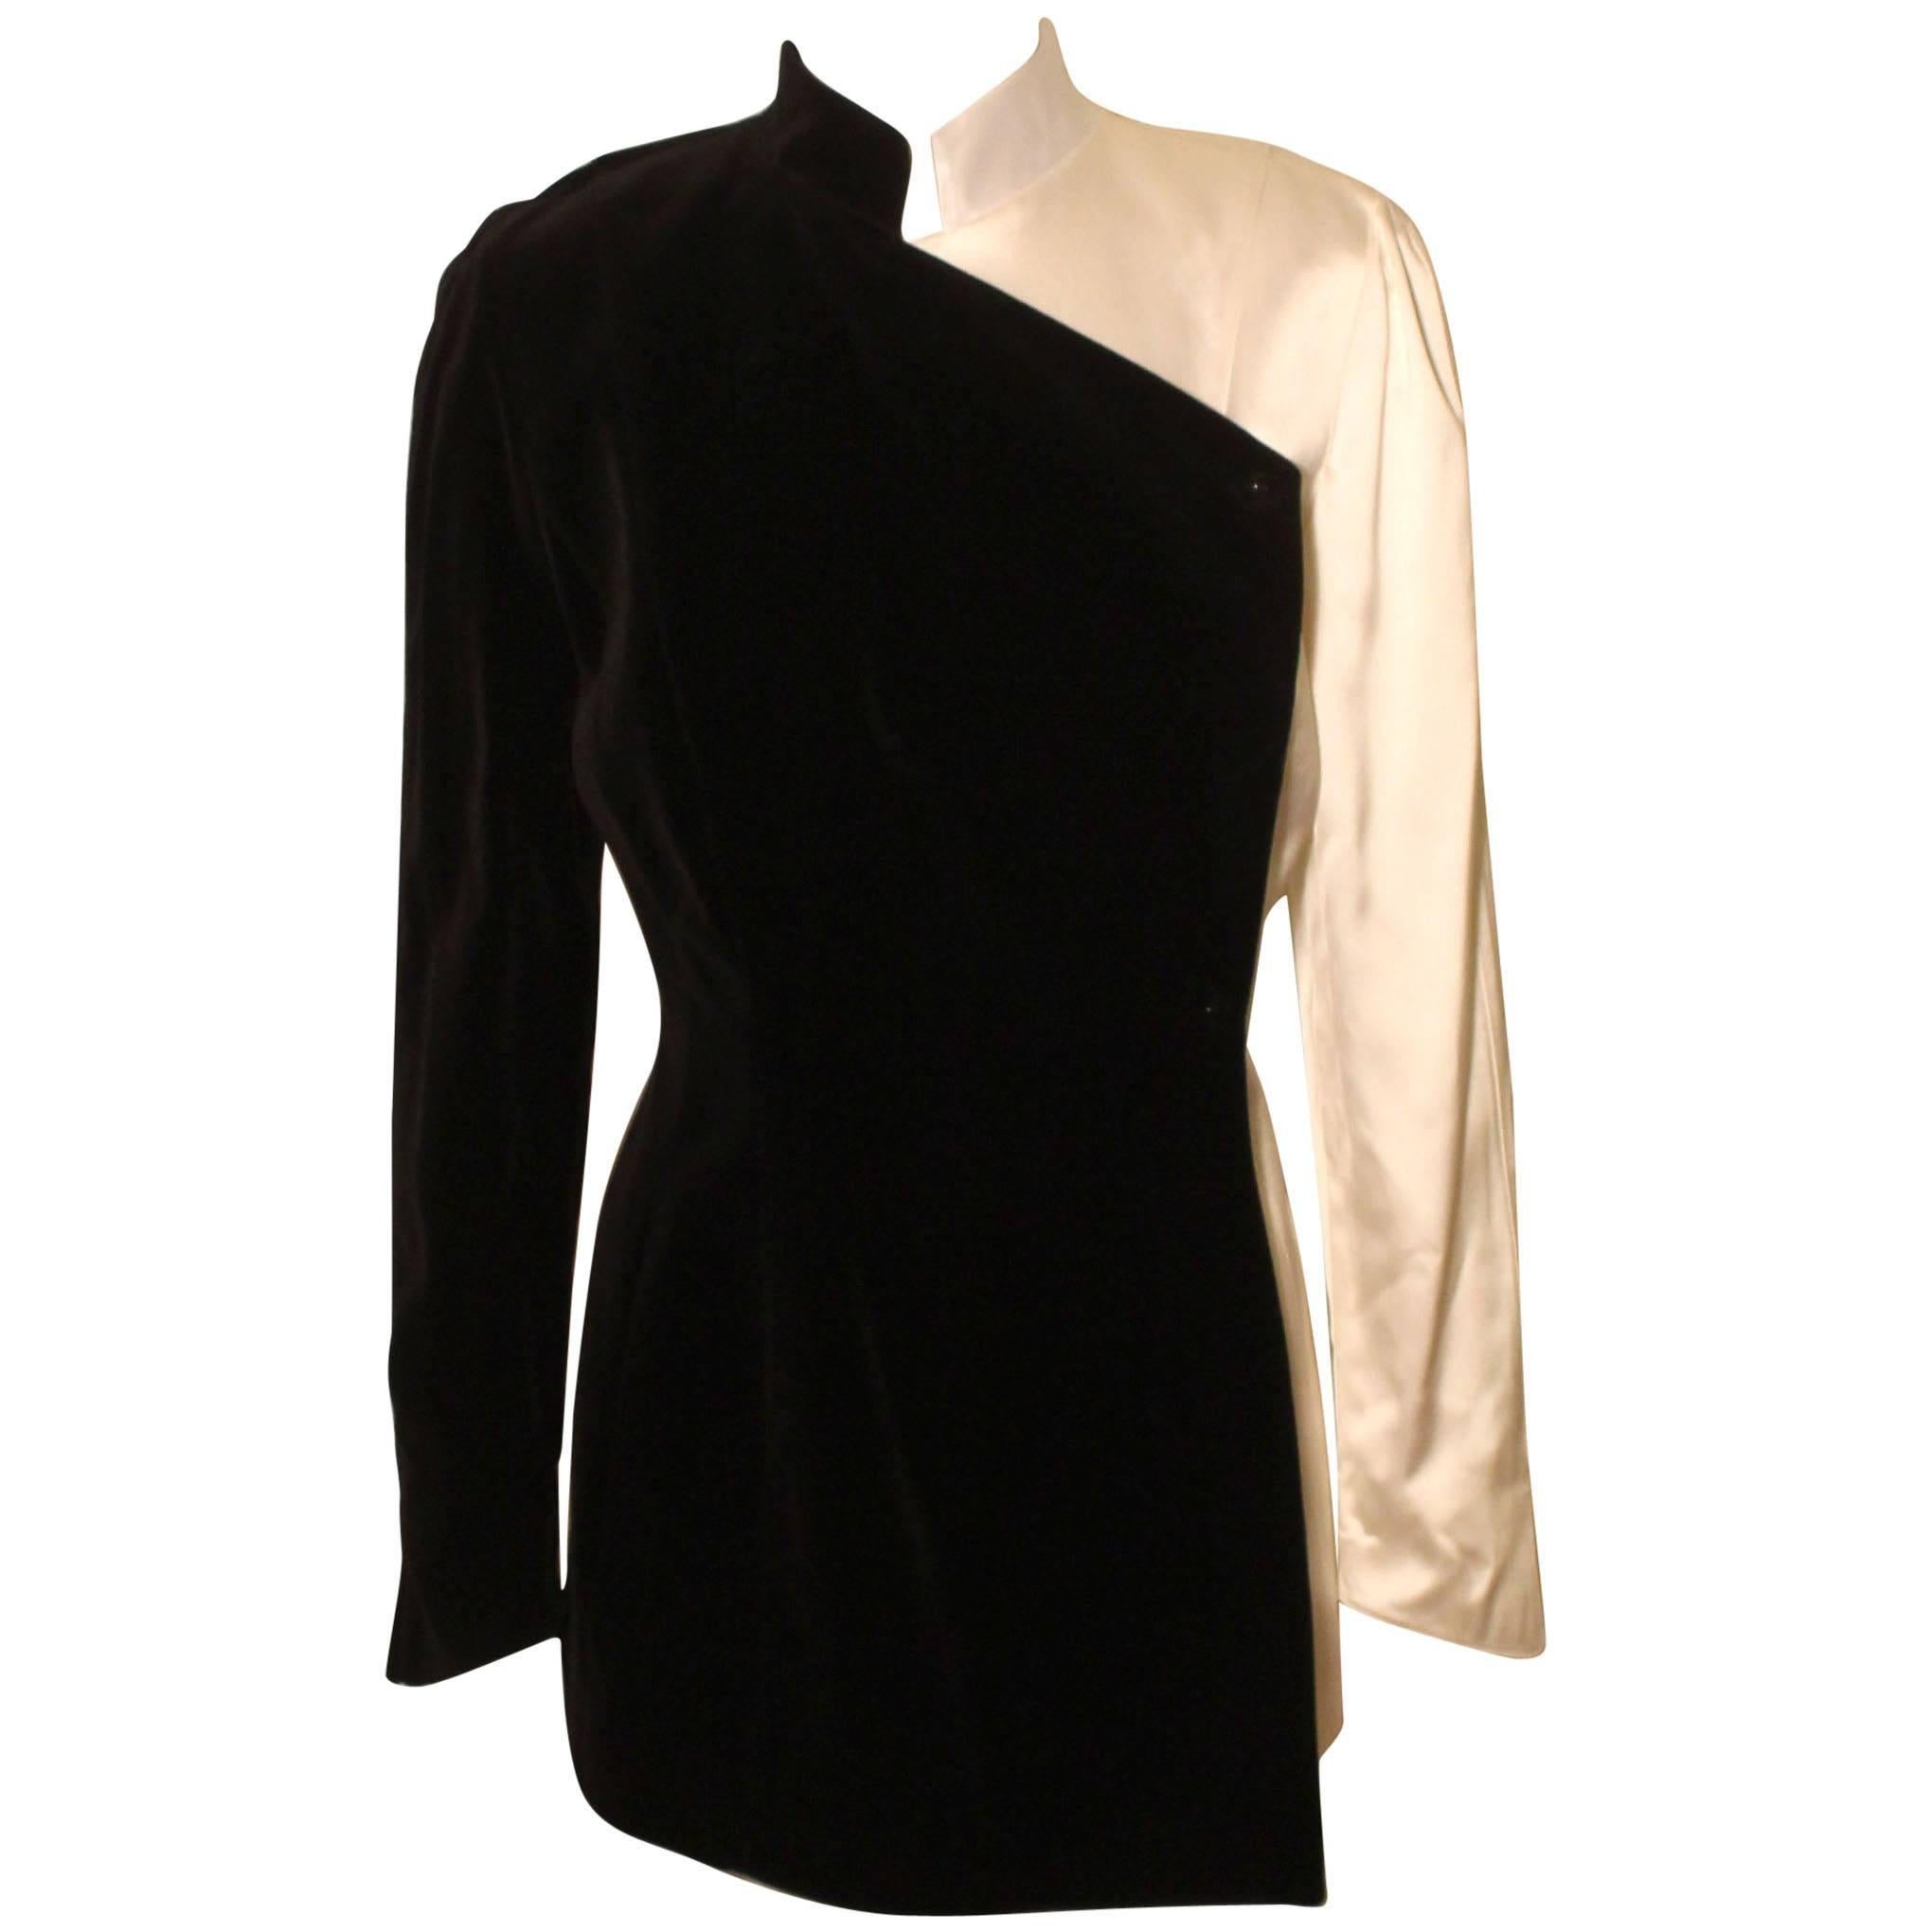 Thierry Mugler Stunning White Satin/Black Velvet Evening Jacket For Sale